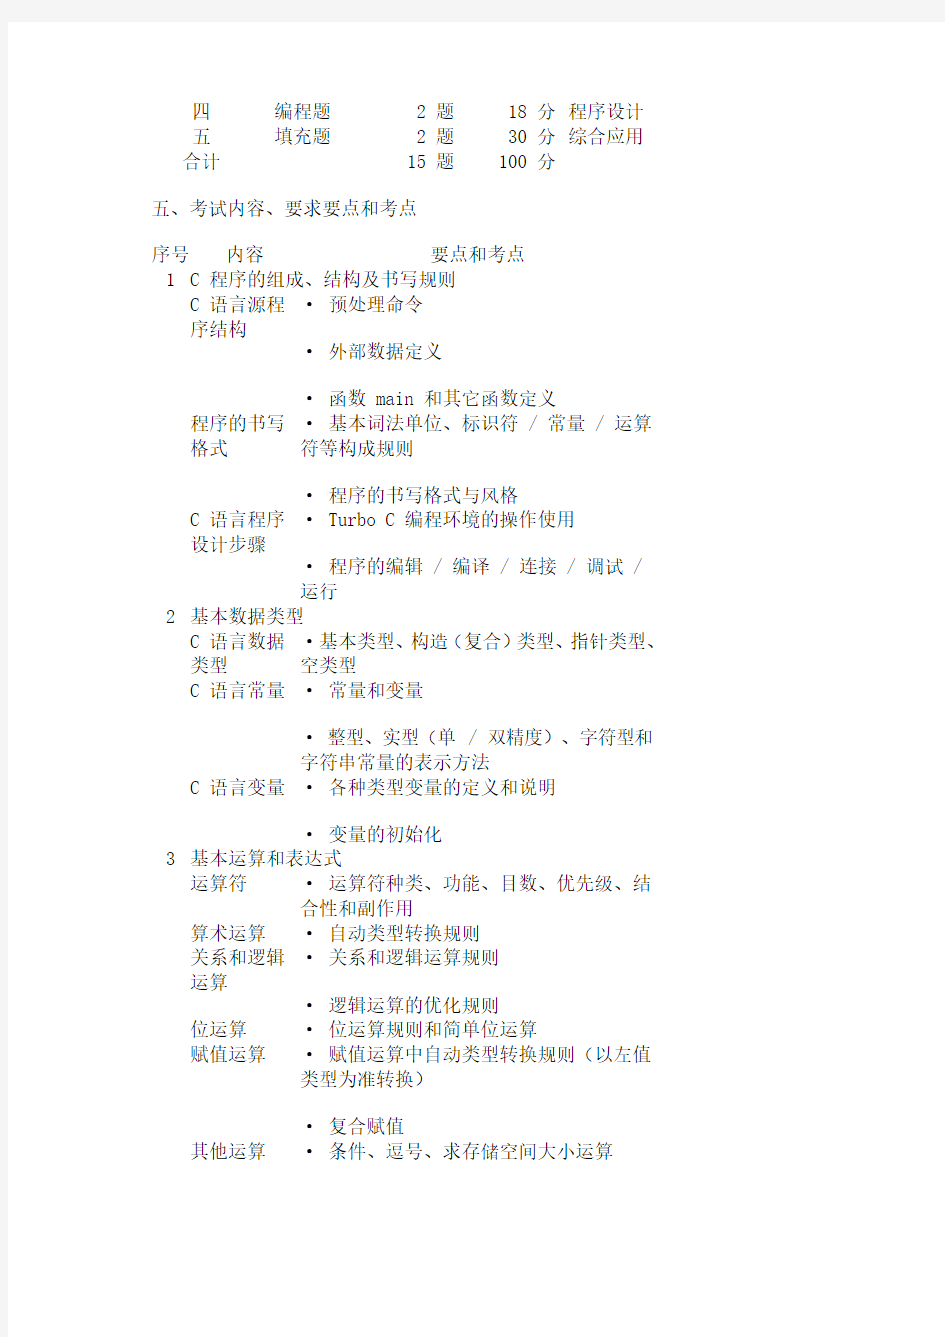 上海市计算机等级考试(二级c语言)考纲